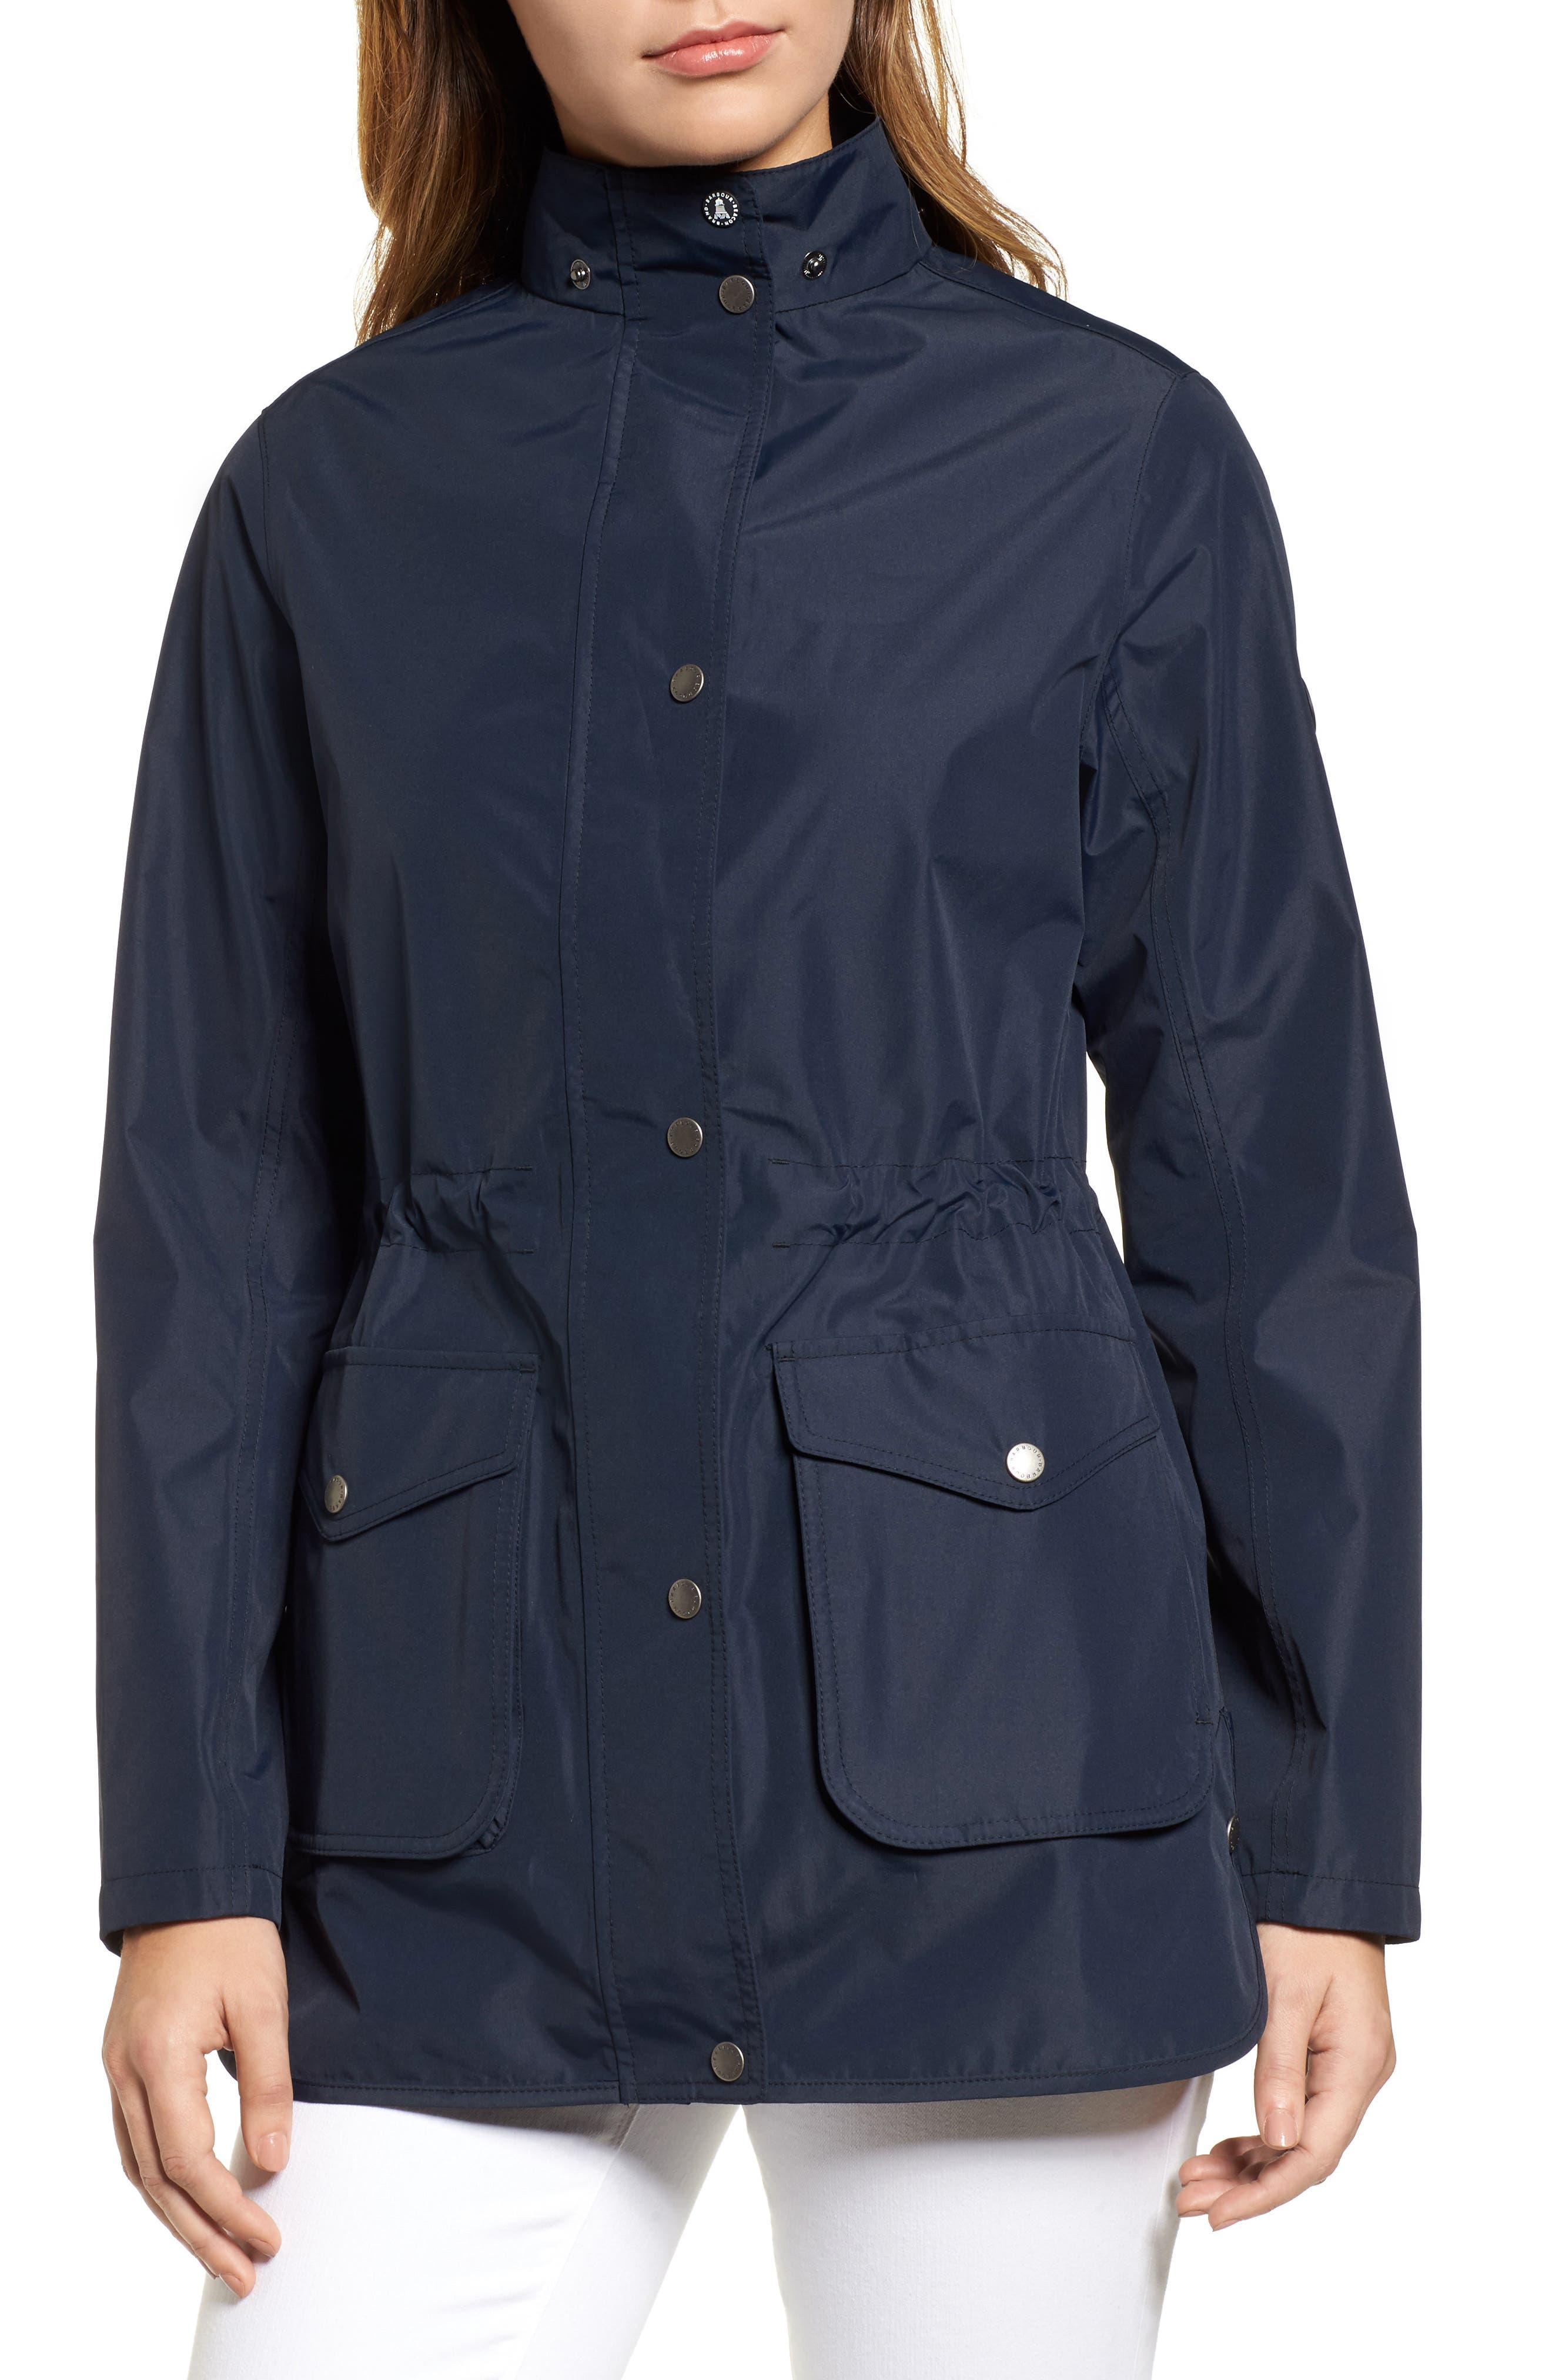 barbour studland waterproof jacket